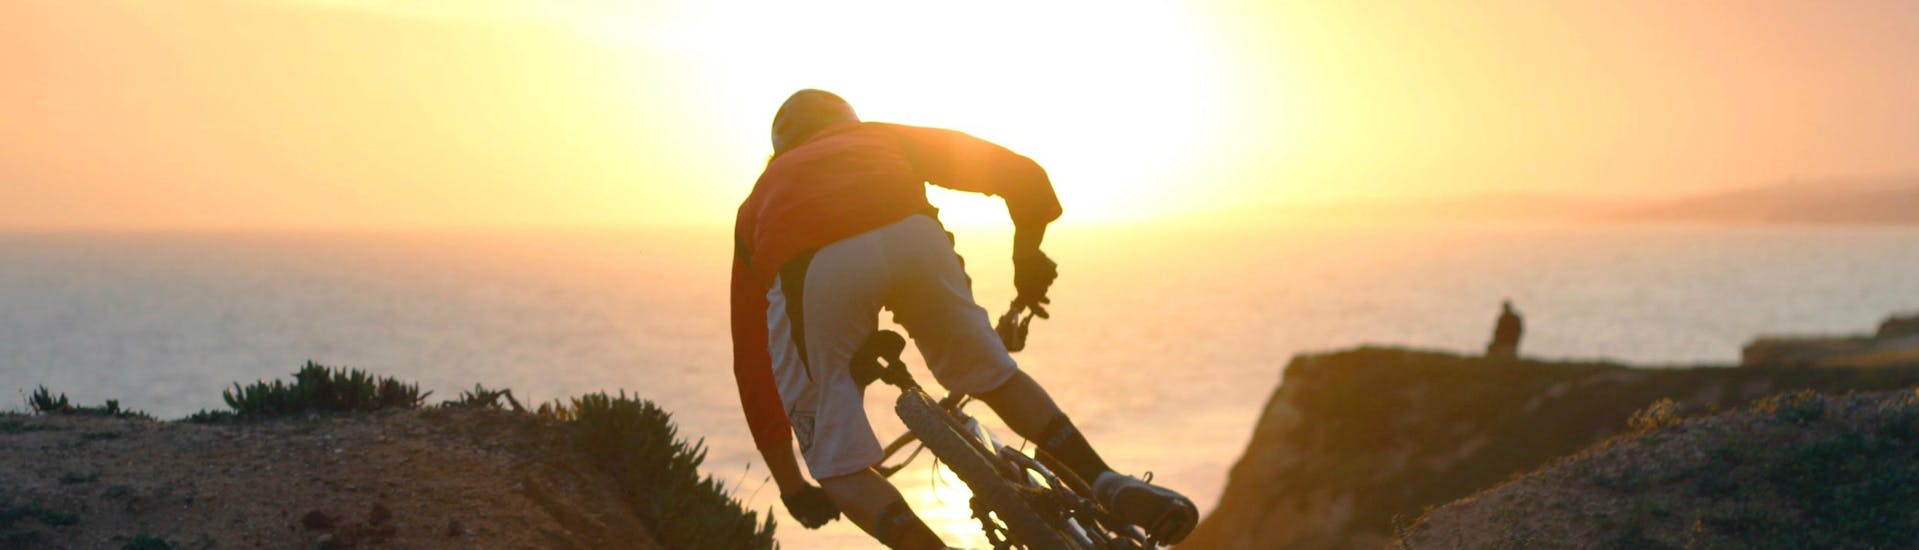 Mountain Bike Sunset Tour - Algarve.